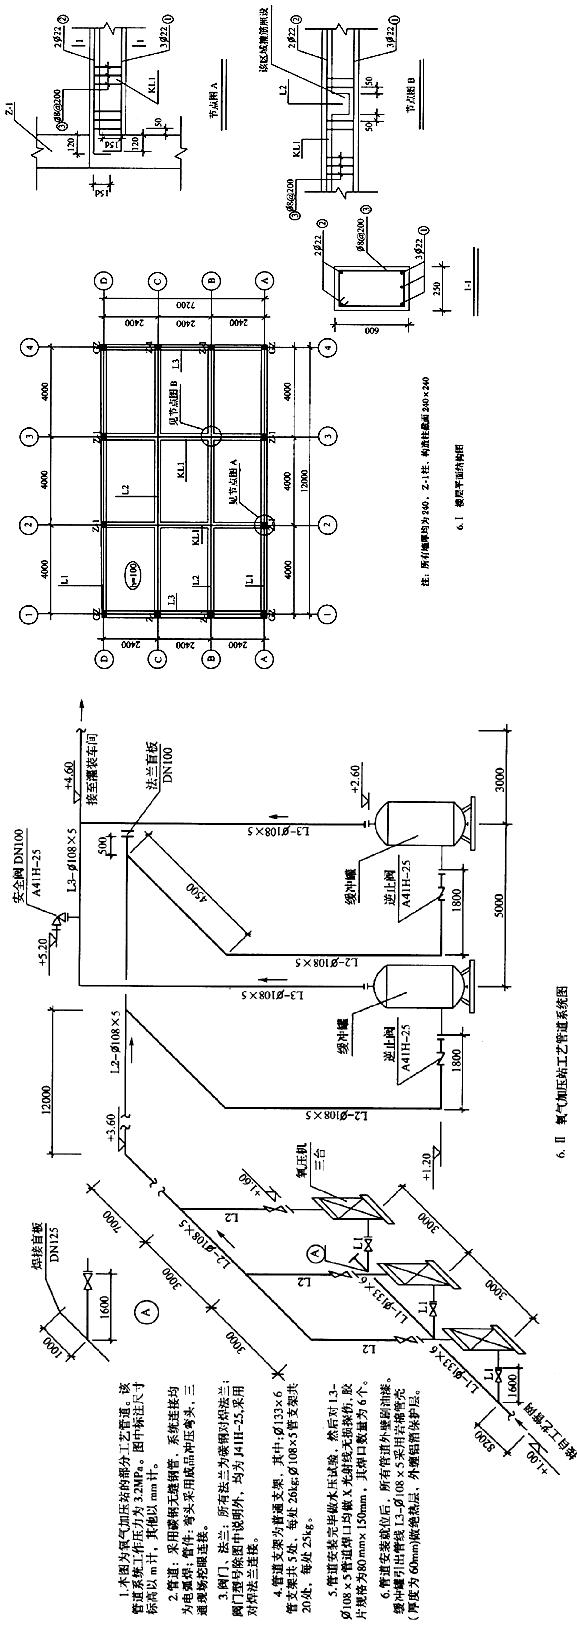 工业管道安装工程 某氧气加压站工艺管道系统如图6.Ⅱ所示。计算相关费用时按下列规定： （1)该工程部